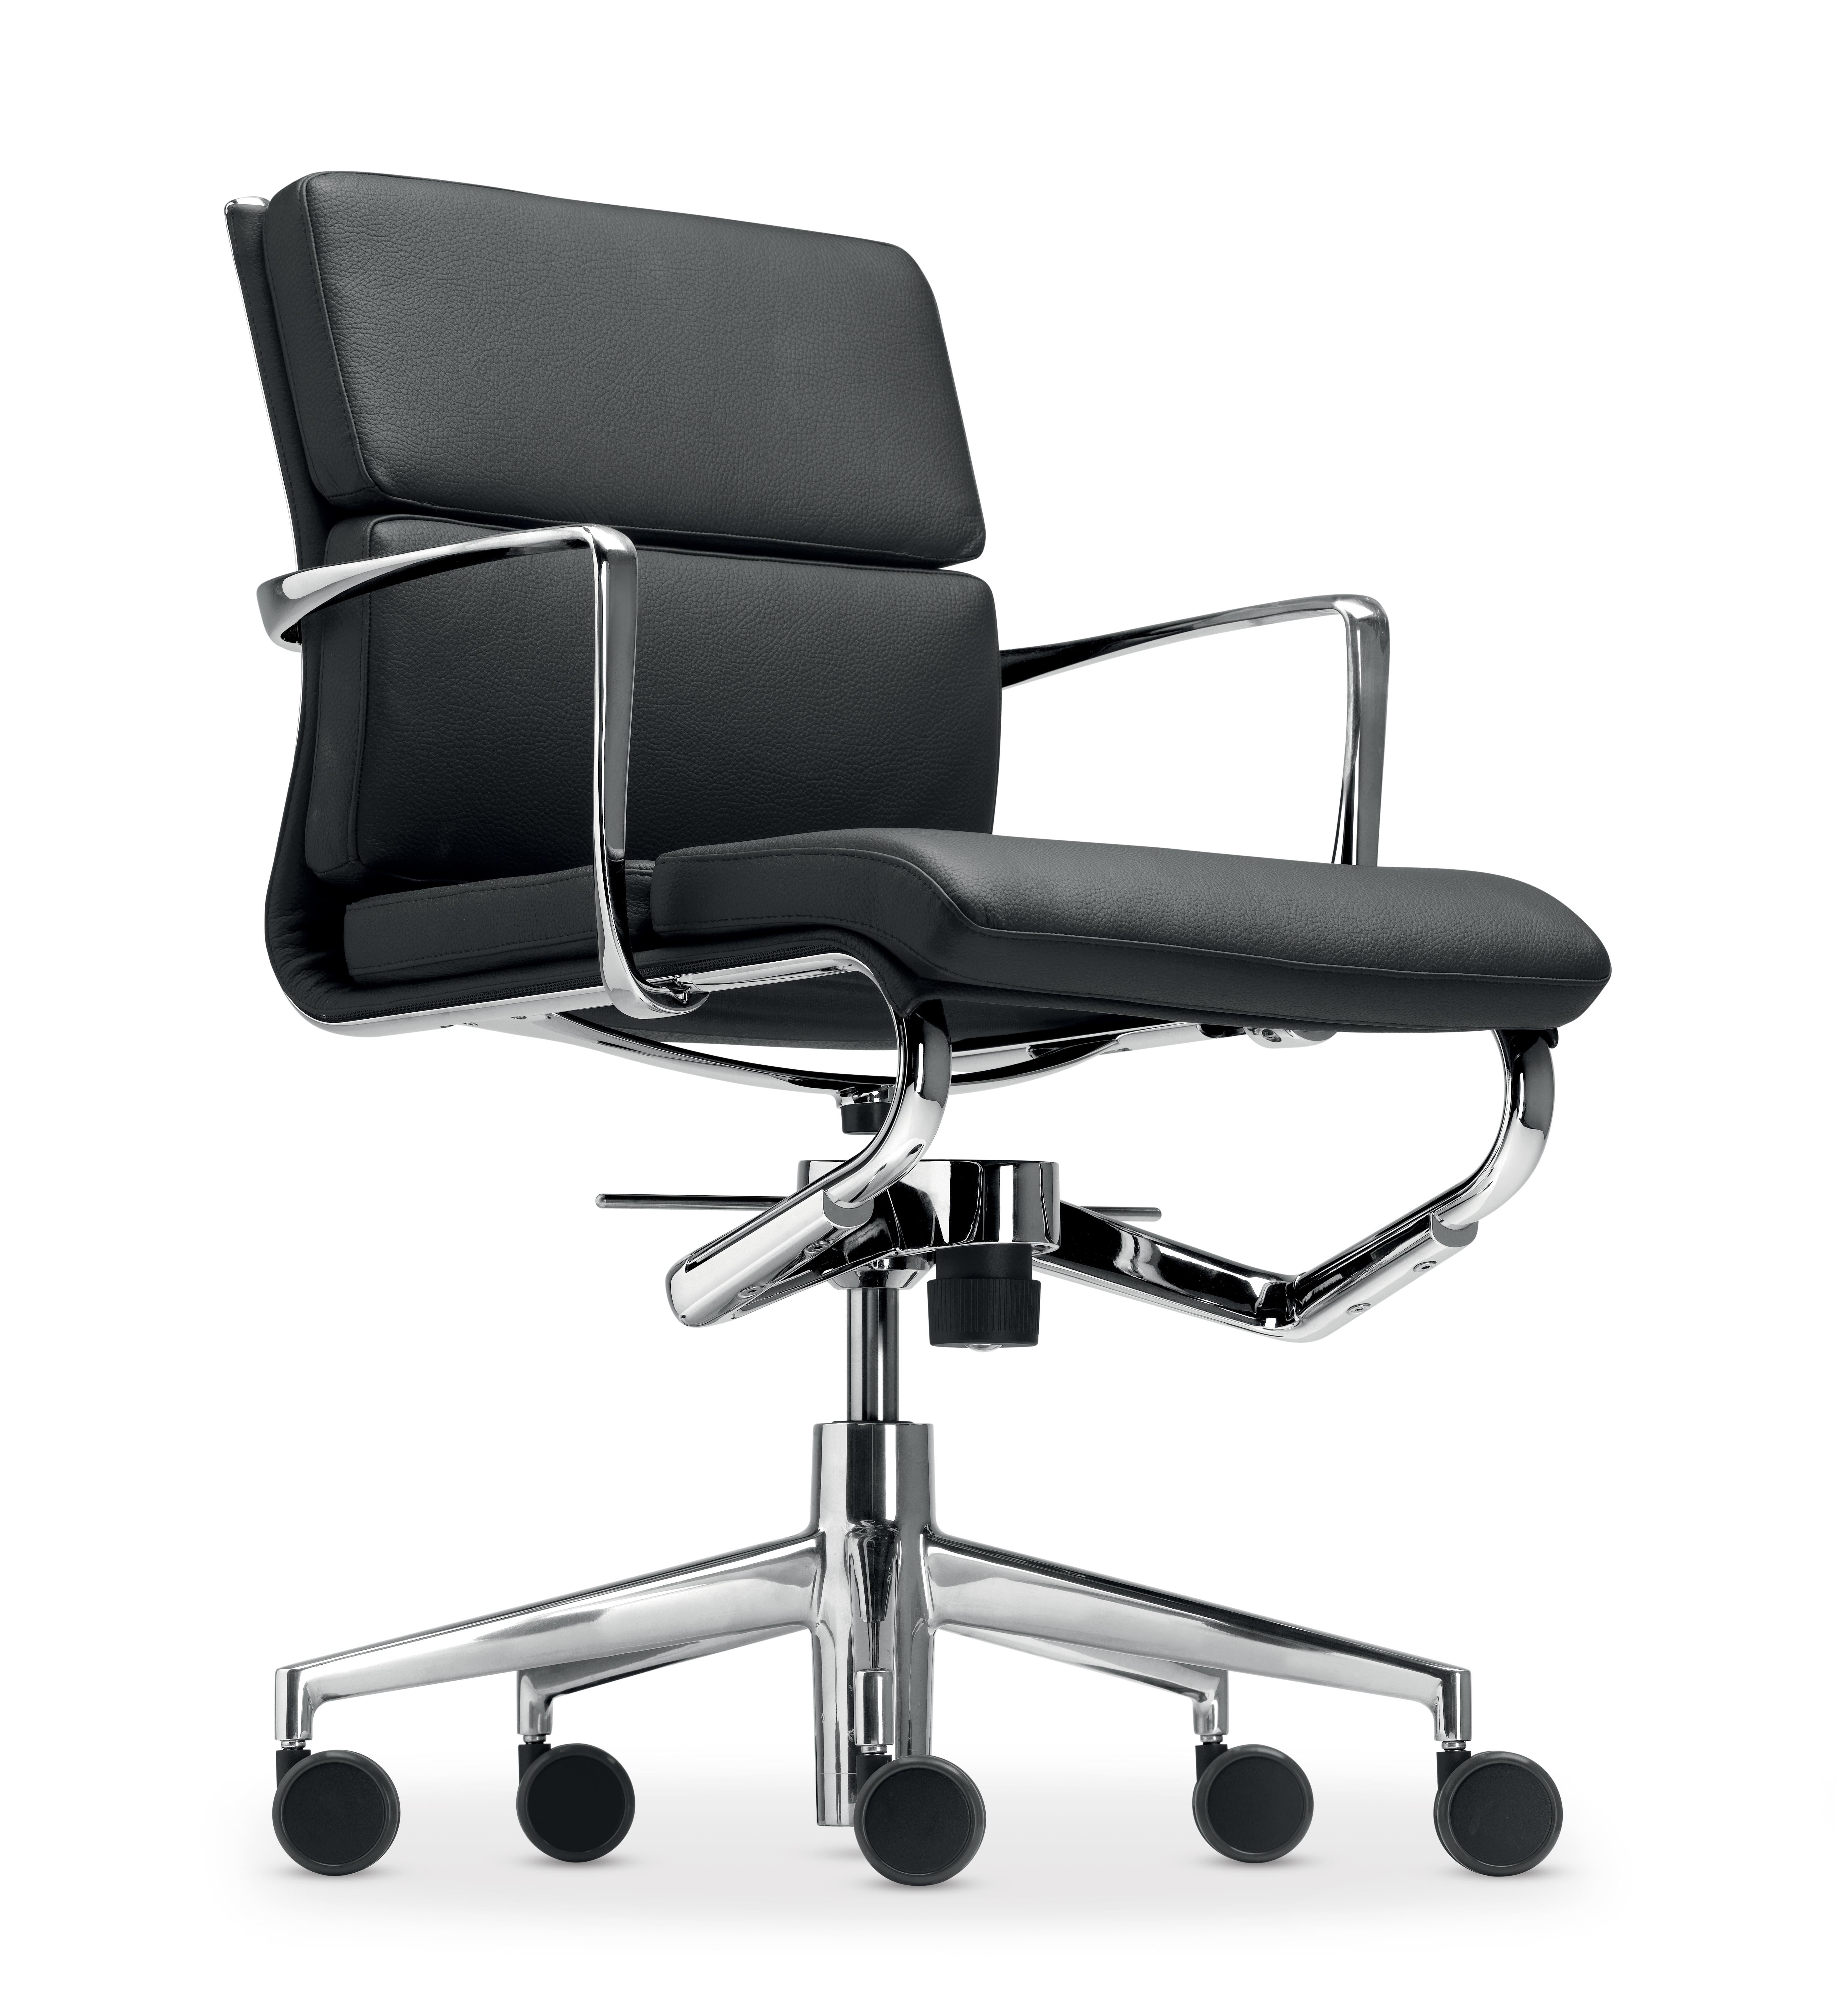 Alias 427 Rollingframe+low Tilt 47 Soft Chair in Schwarz mit verchromtem Aluminiumgestell von Alberto Meda

Höhenverstellbarer Stuhl mit Armlehnen, mit weichen (oder harten oder weichbrechenden ***) Rollen und 5-Stern-Drehfuß mit Kippmechanismus.